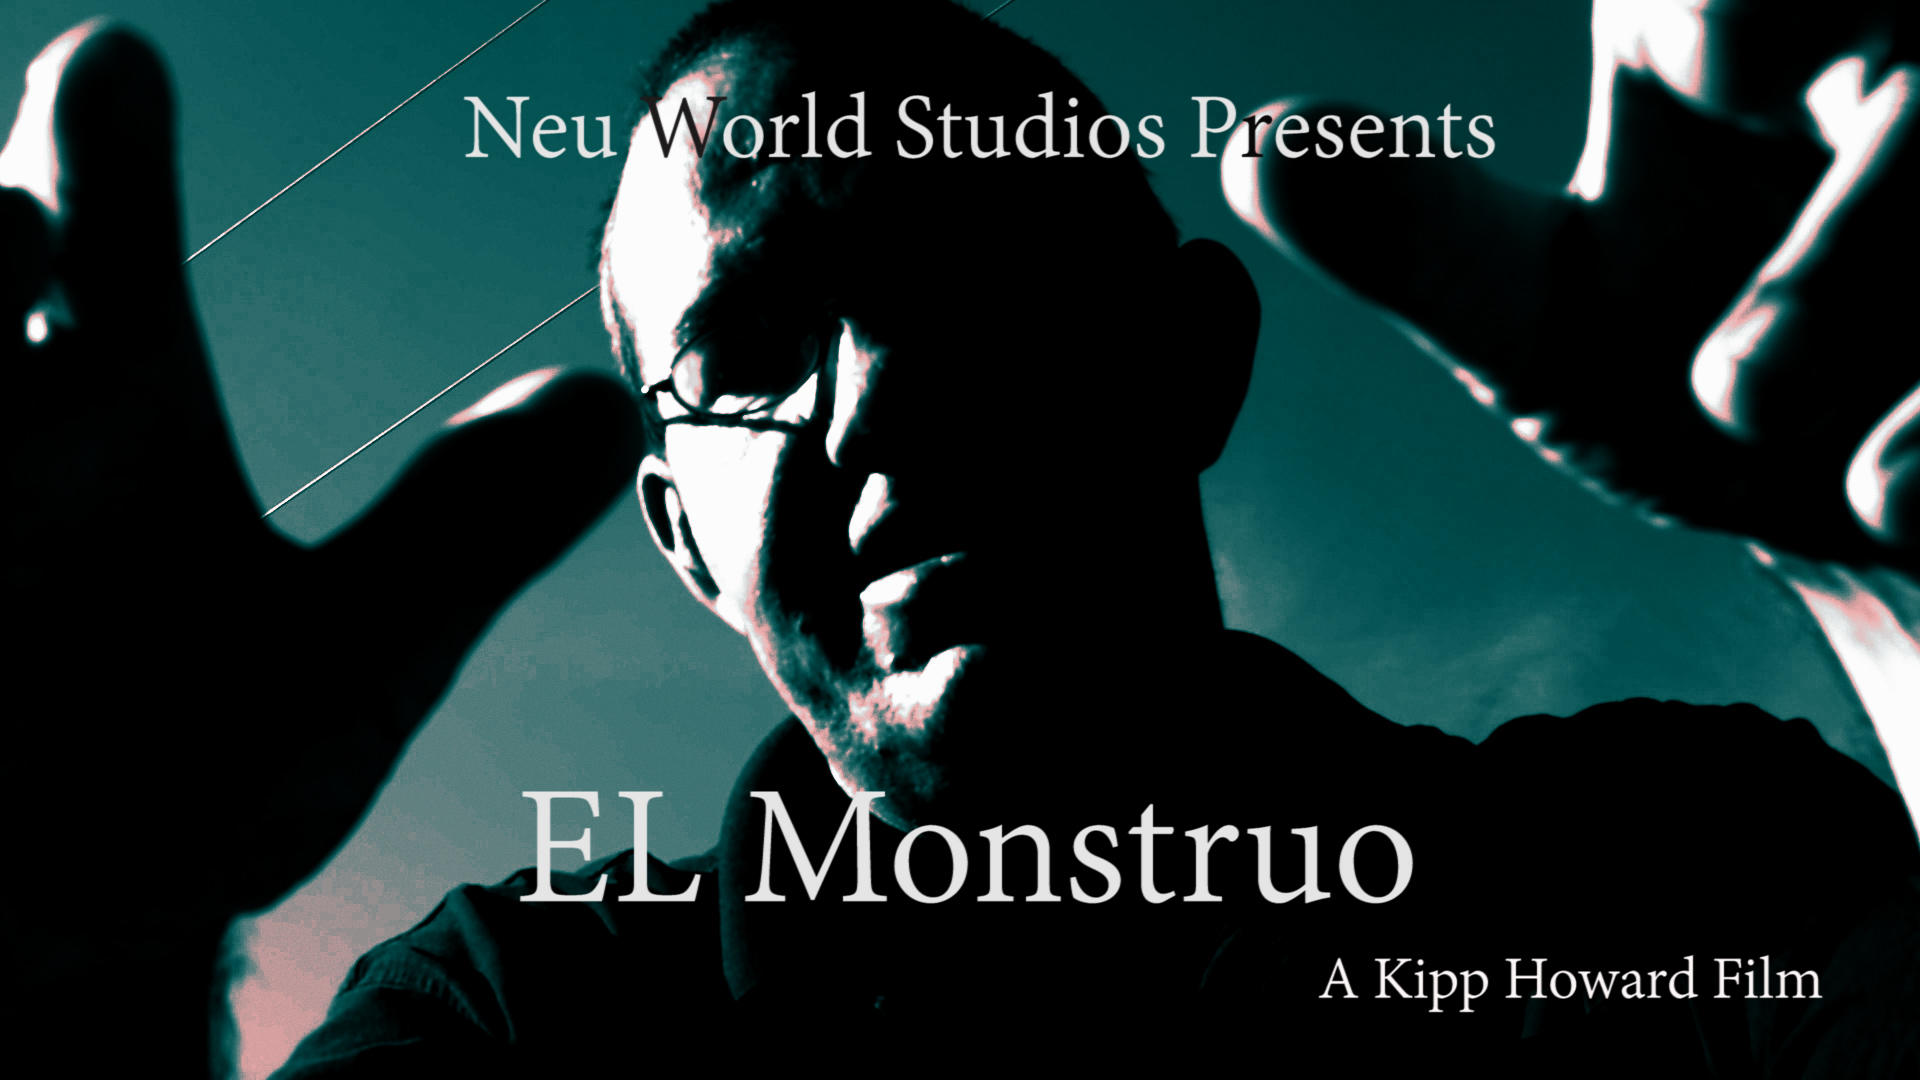 Luke Kirby as the Baby Man Monster in El Monstruo